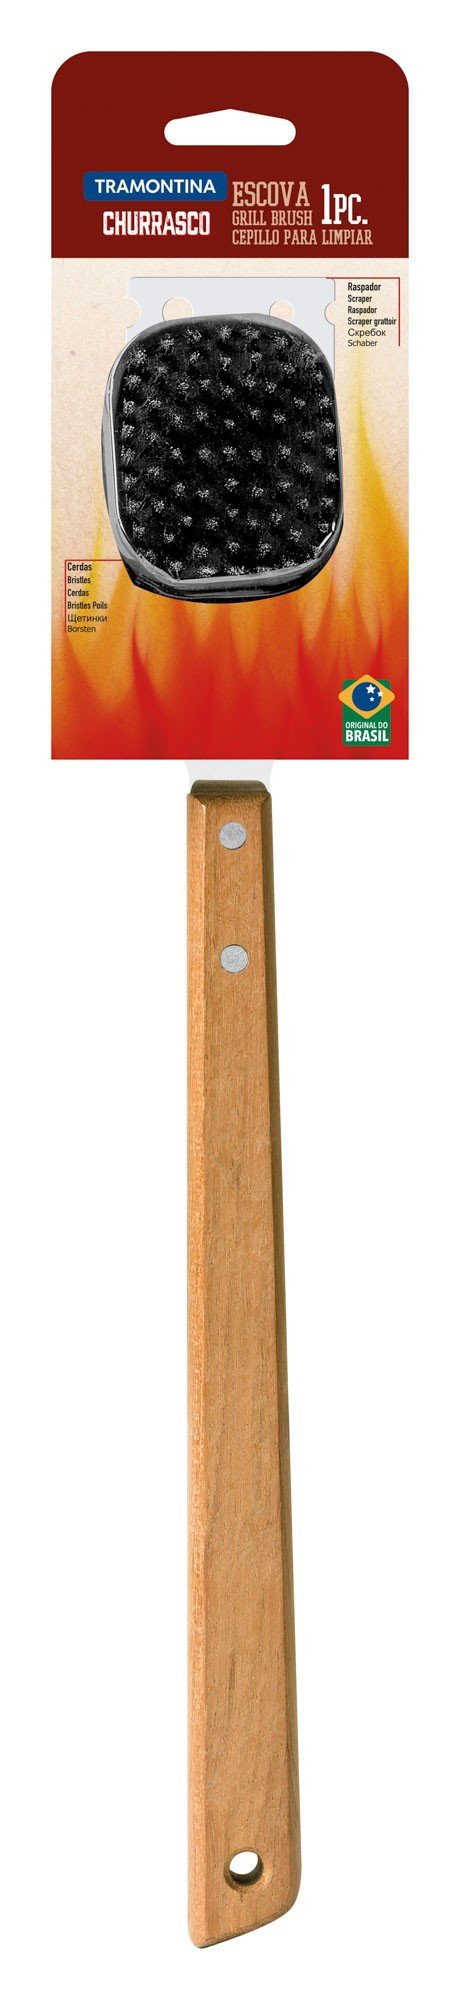 Escova para Grelhas Churrasco com Lâmina em Aço Inox e Cabo de Madeira 41,6 cm